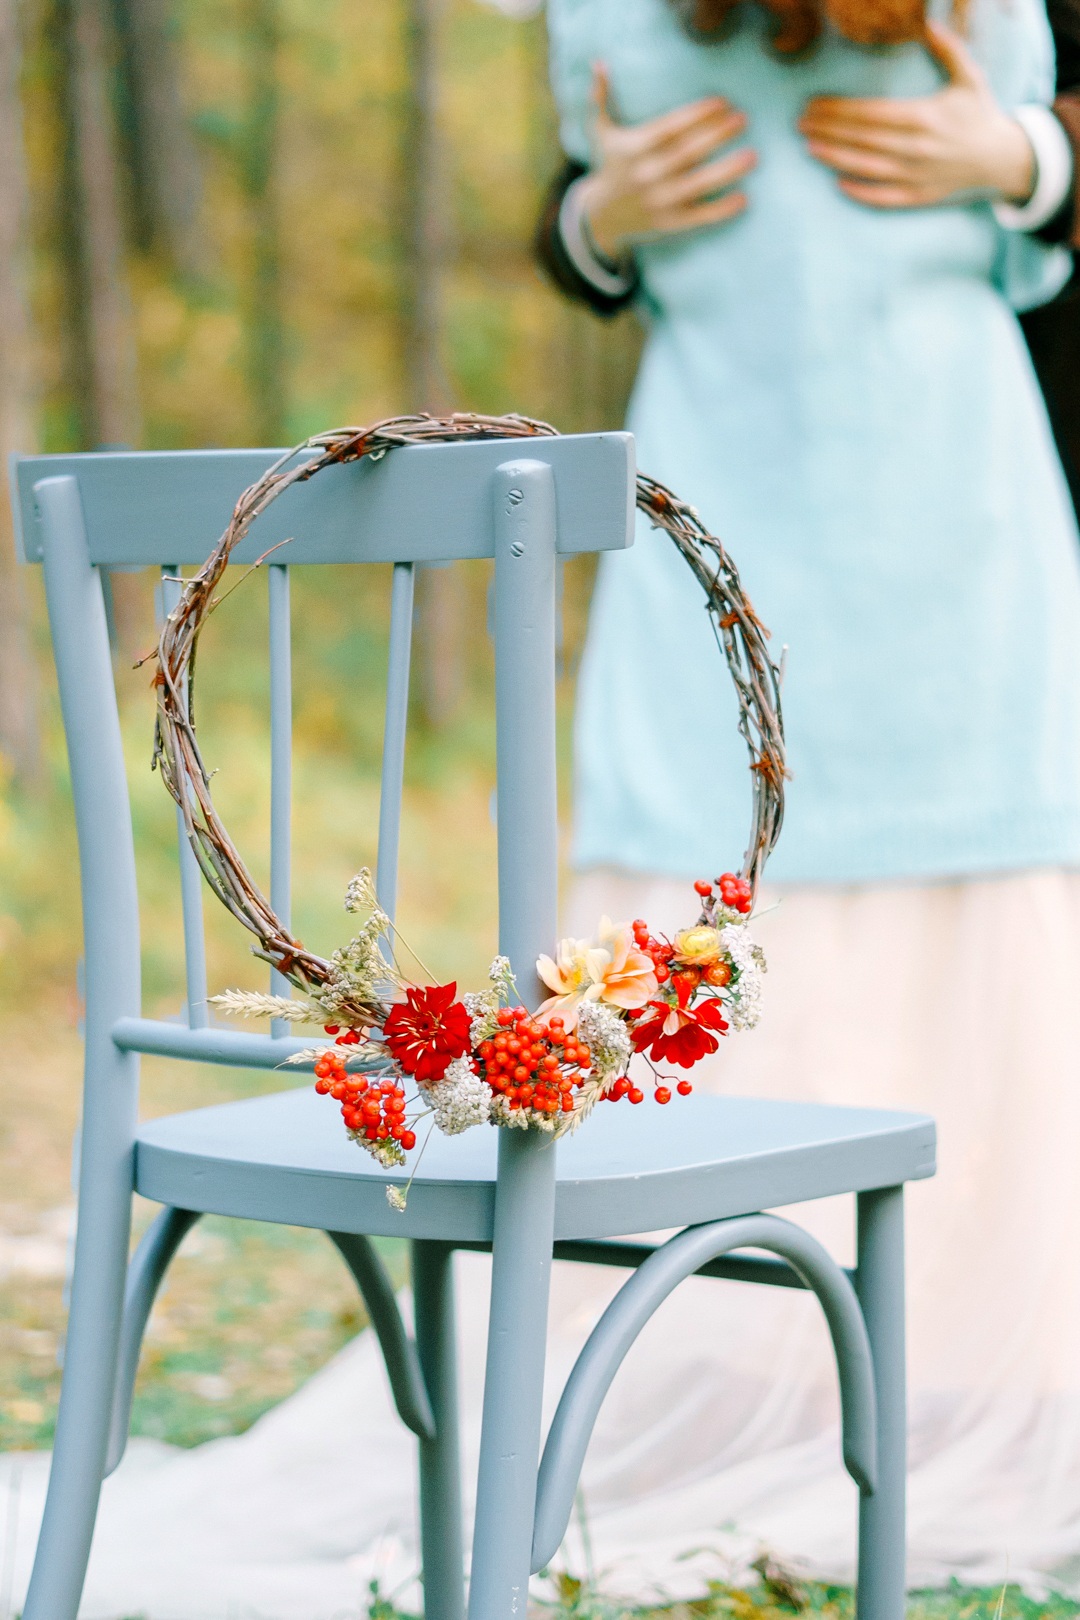 Осенний лес: стилизованная свадьба для двоих